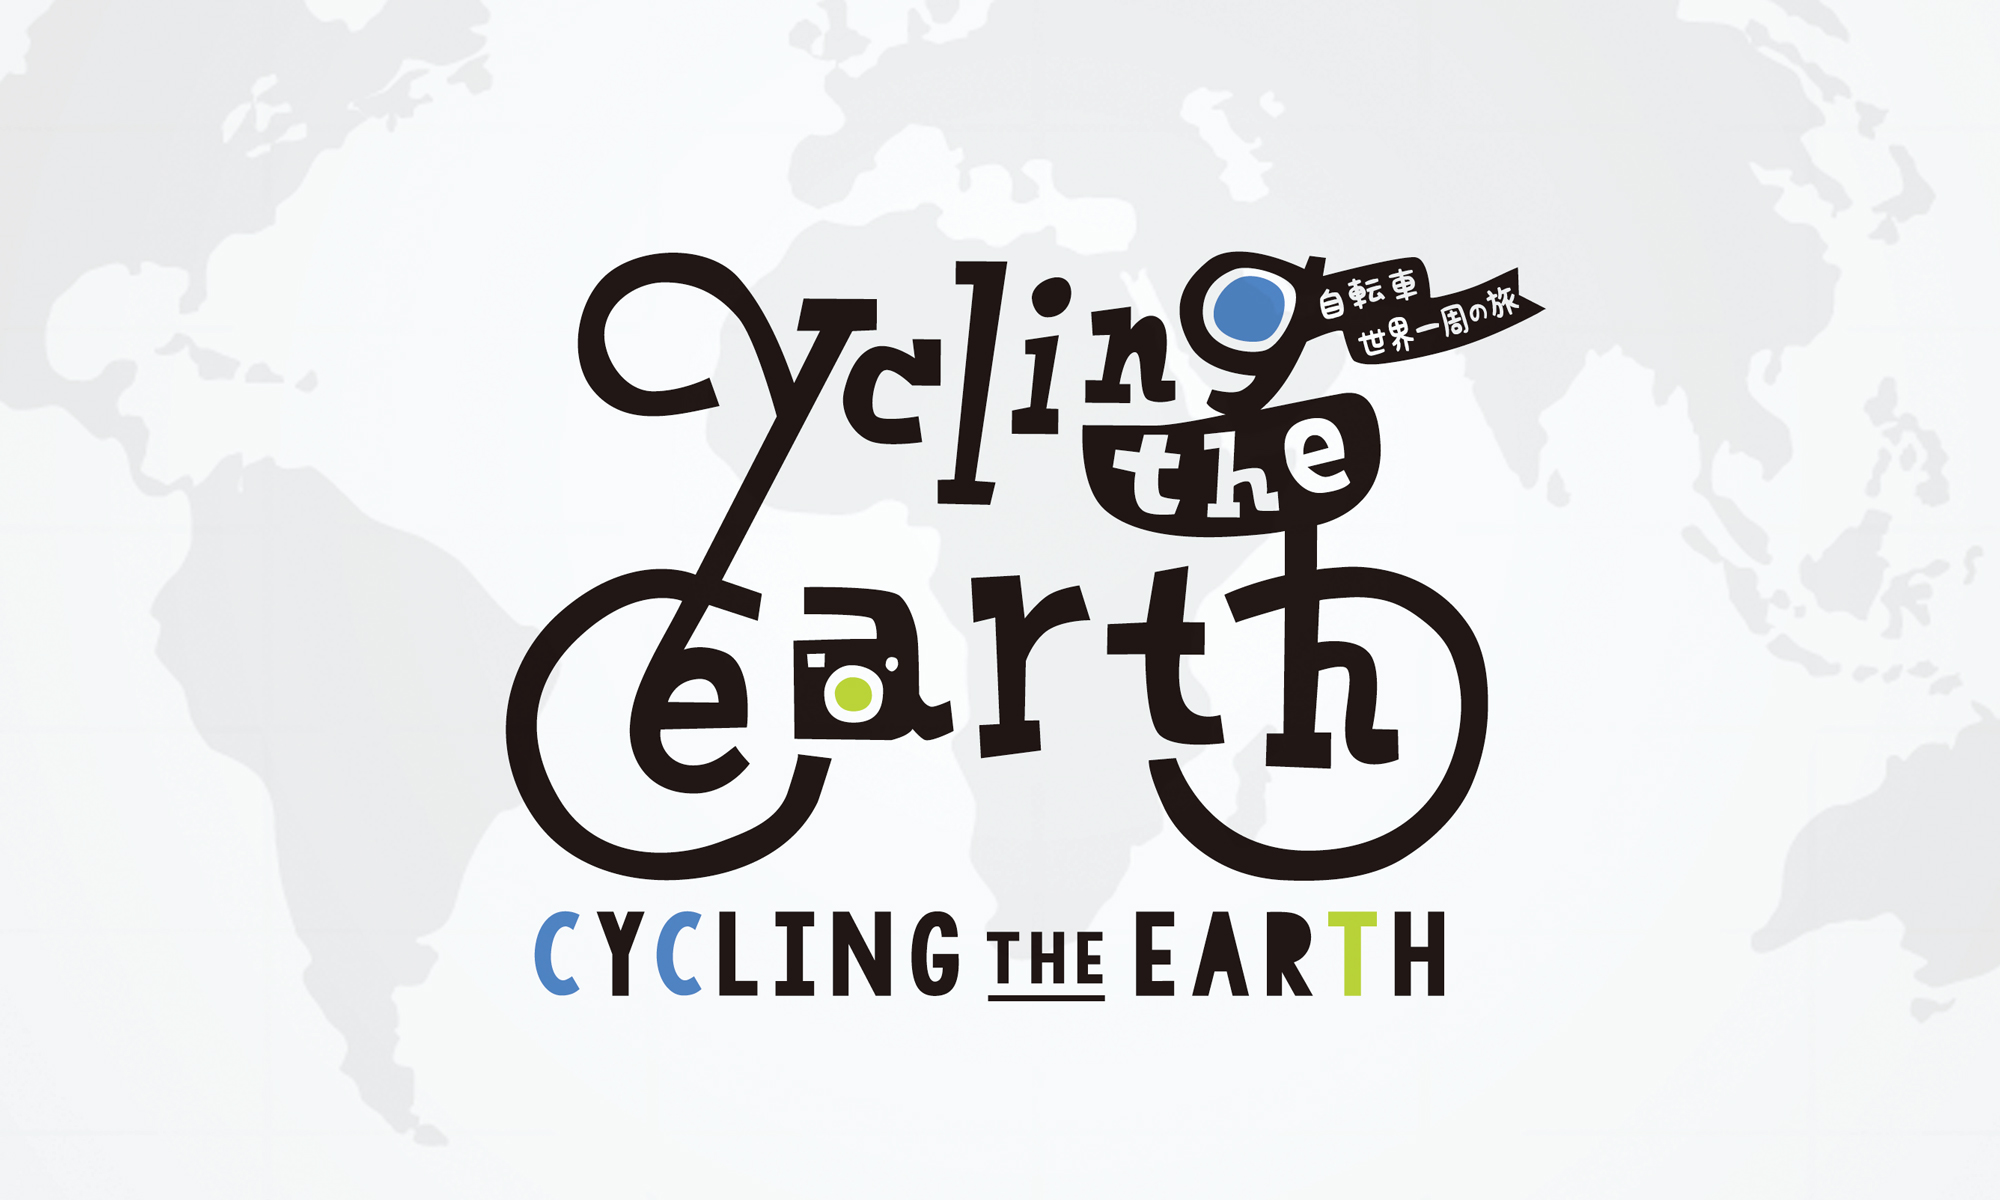 Cycling The Earth 自転車世界一周の旅 ロゴデザイン 広島のデザイン事務所 ロバ企画室 デザインで たのしく あったかく